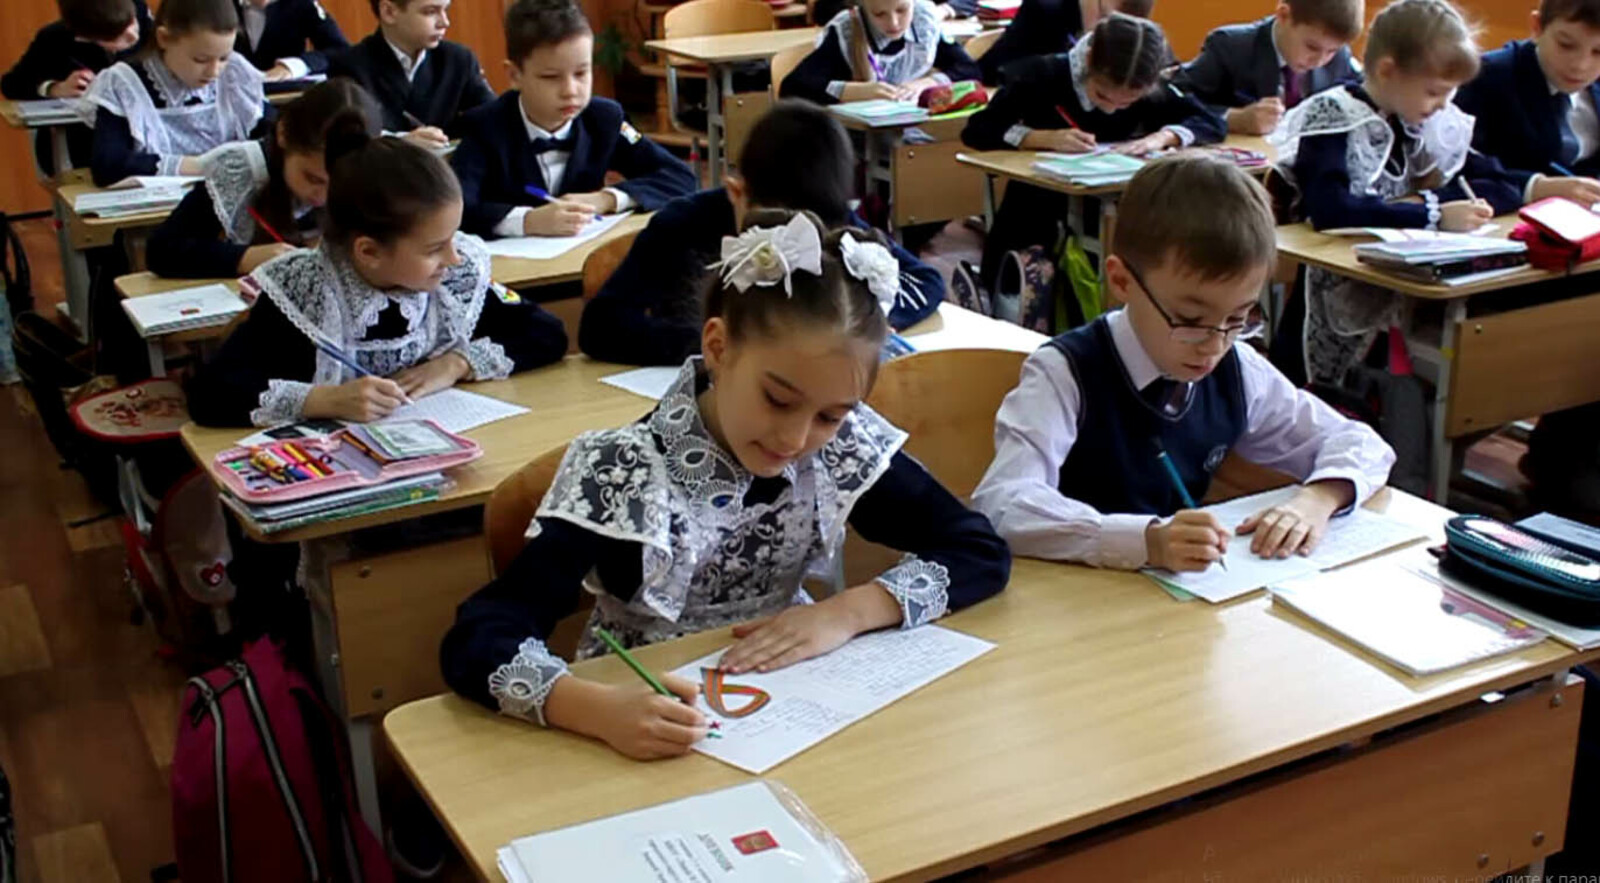 В Башкирии стартовал региональный этап Всероссийского конкурса «Лучший урок письма»